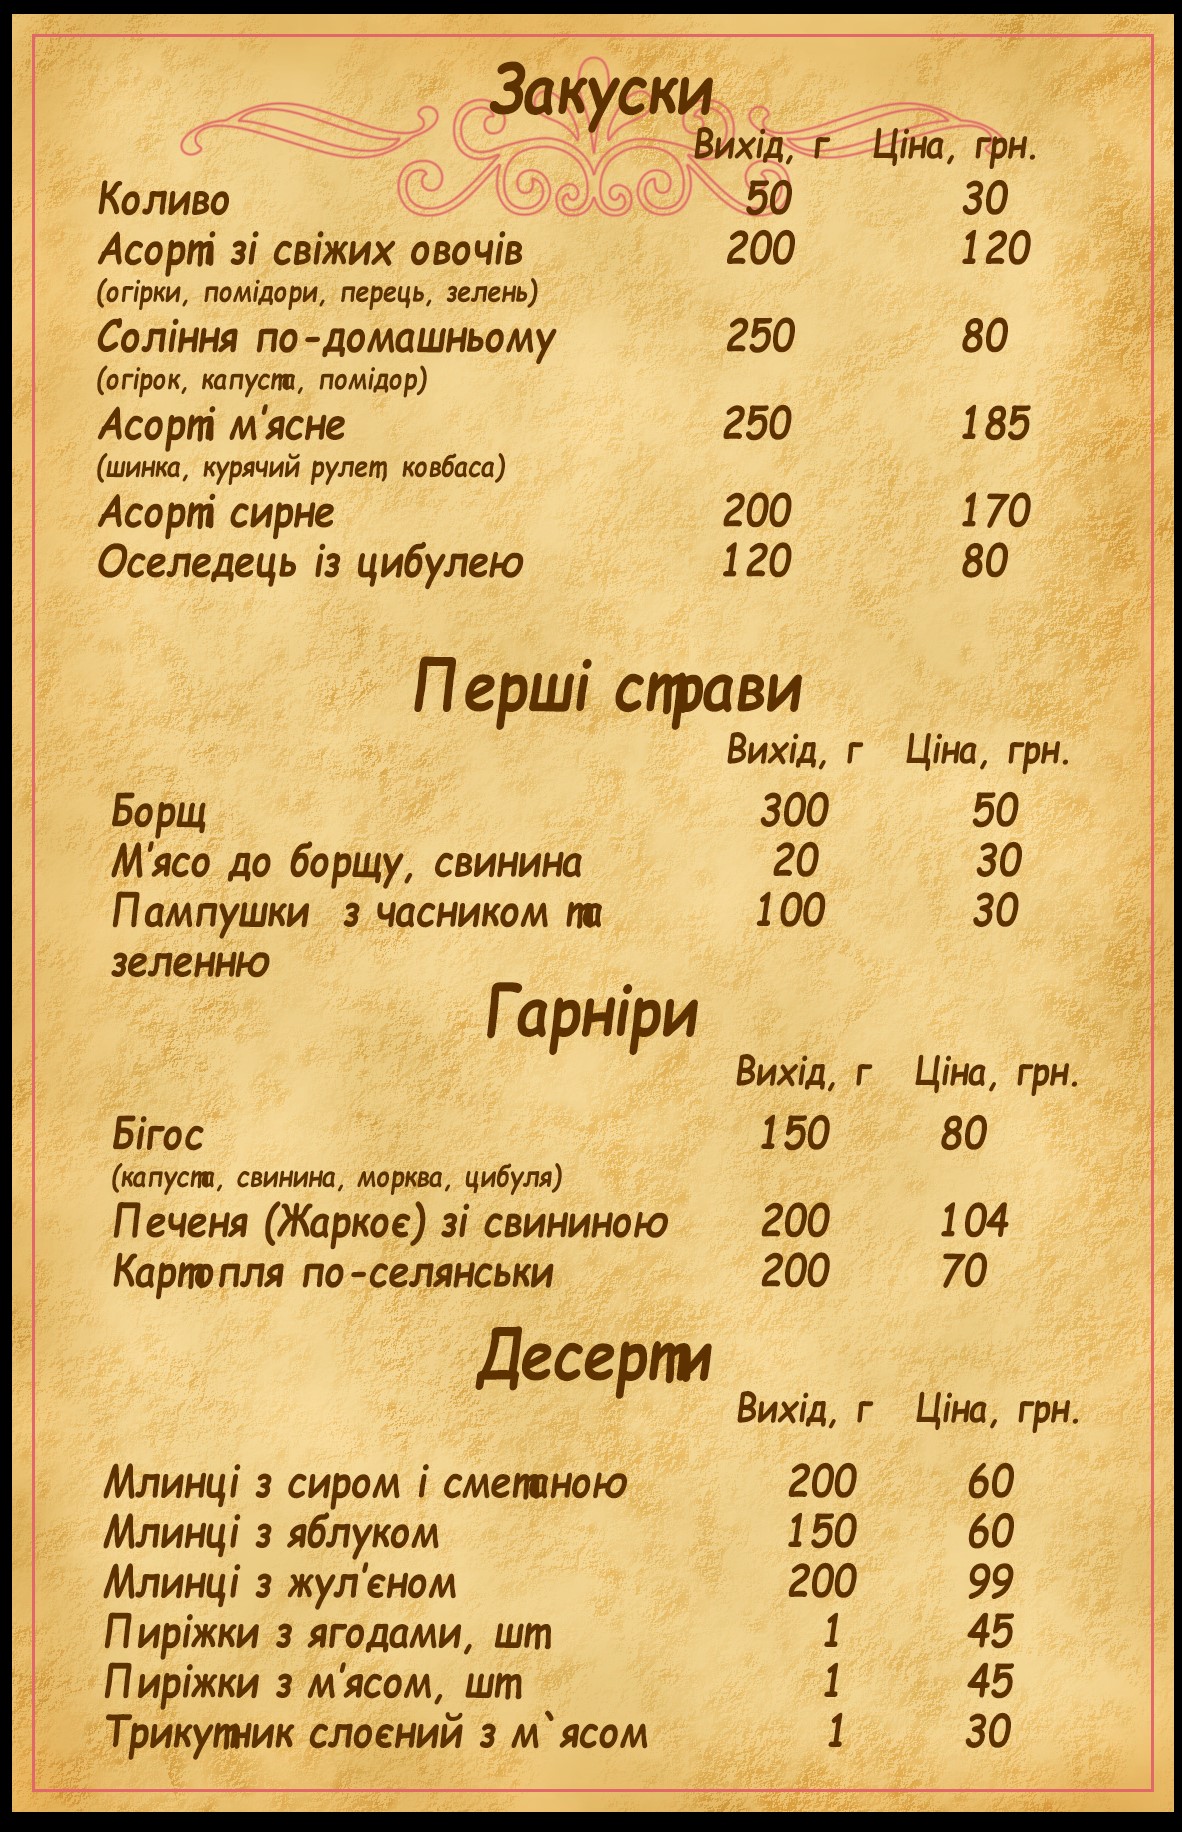 funeral menu